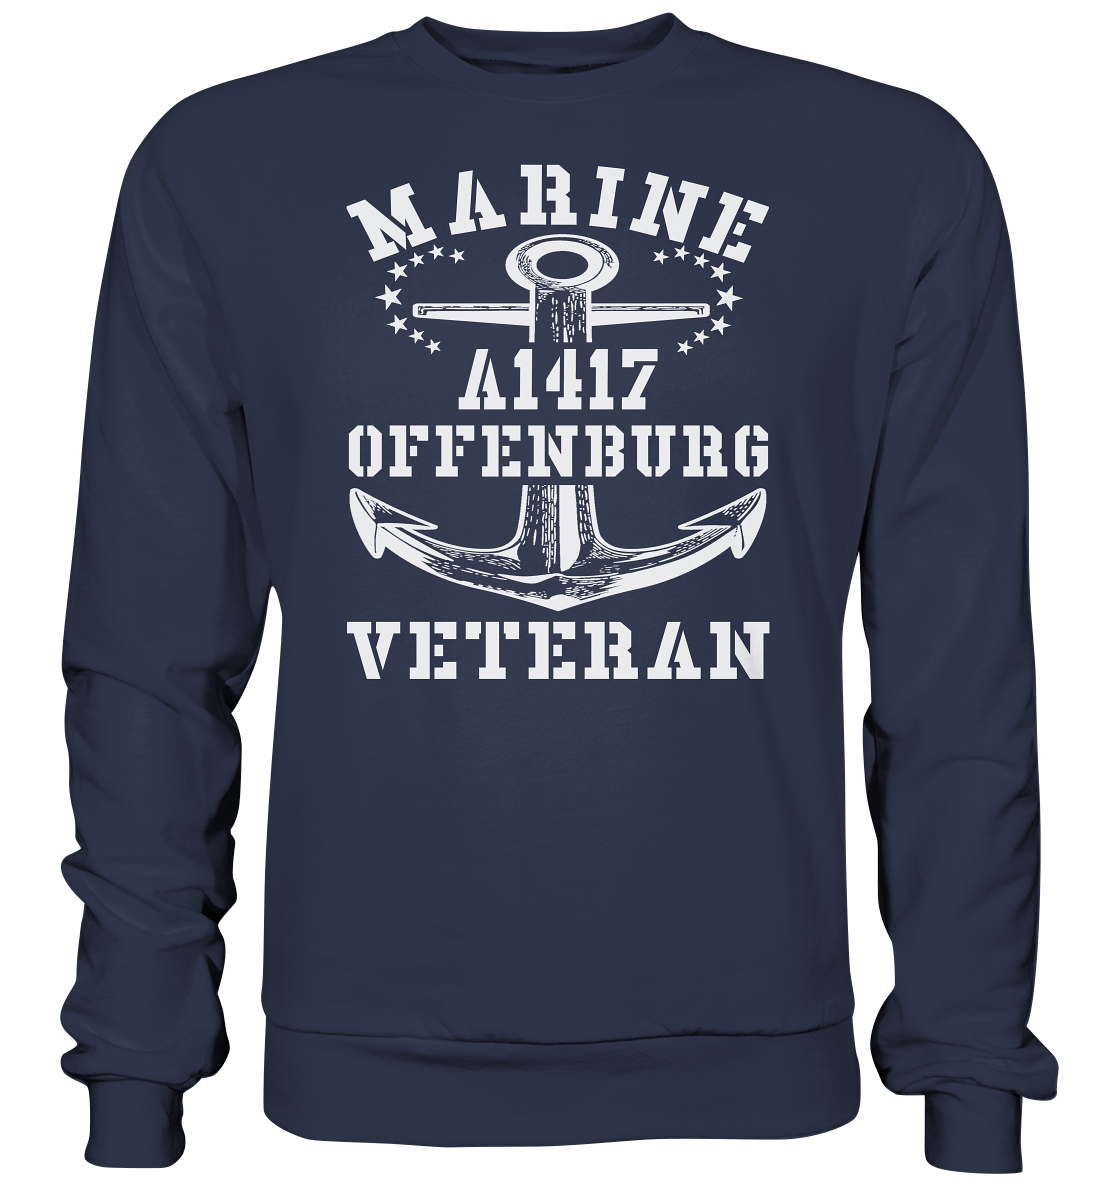 Troßschiff A1417 OFFENBURG Marine Veteran - Premium Sweatshirt